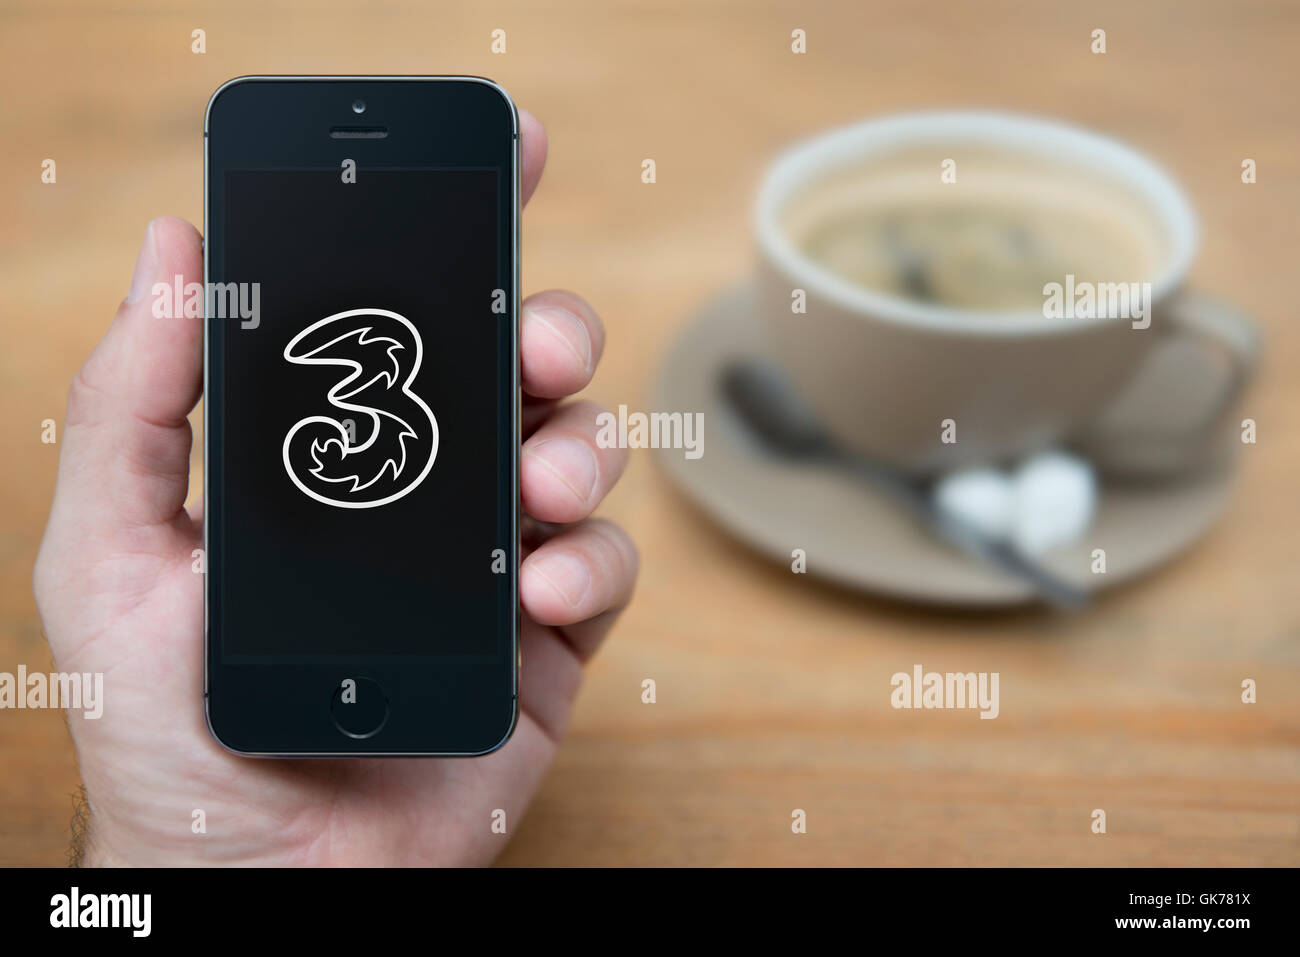 Un homme se penche sur son iPhone qui affiche le logo Mobile trois, tandis qu'assis avec une tasse de café (usage éditorial uniquement). Banque D'Images